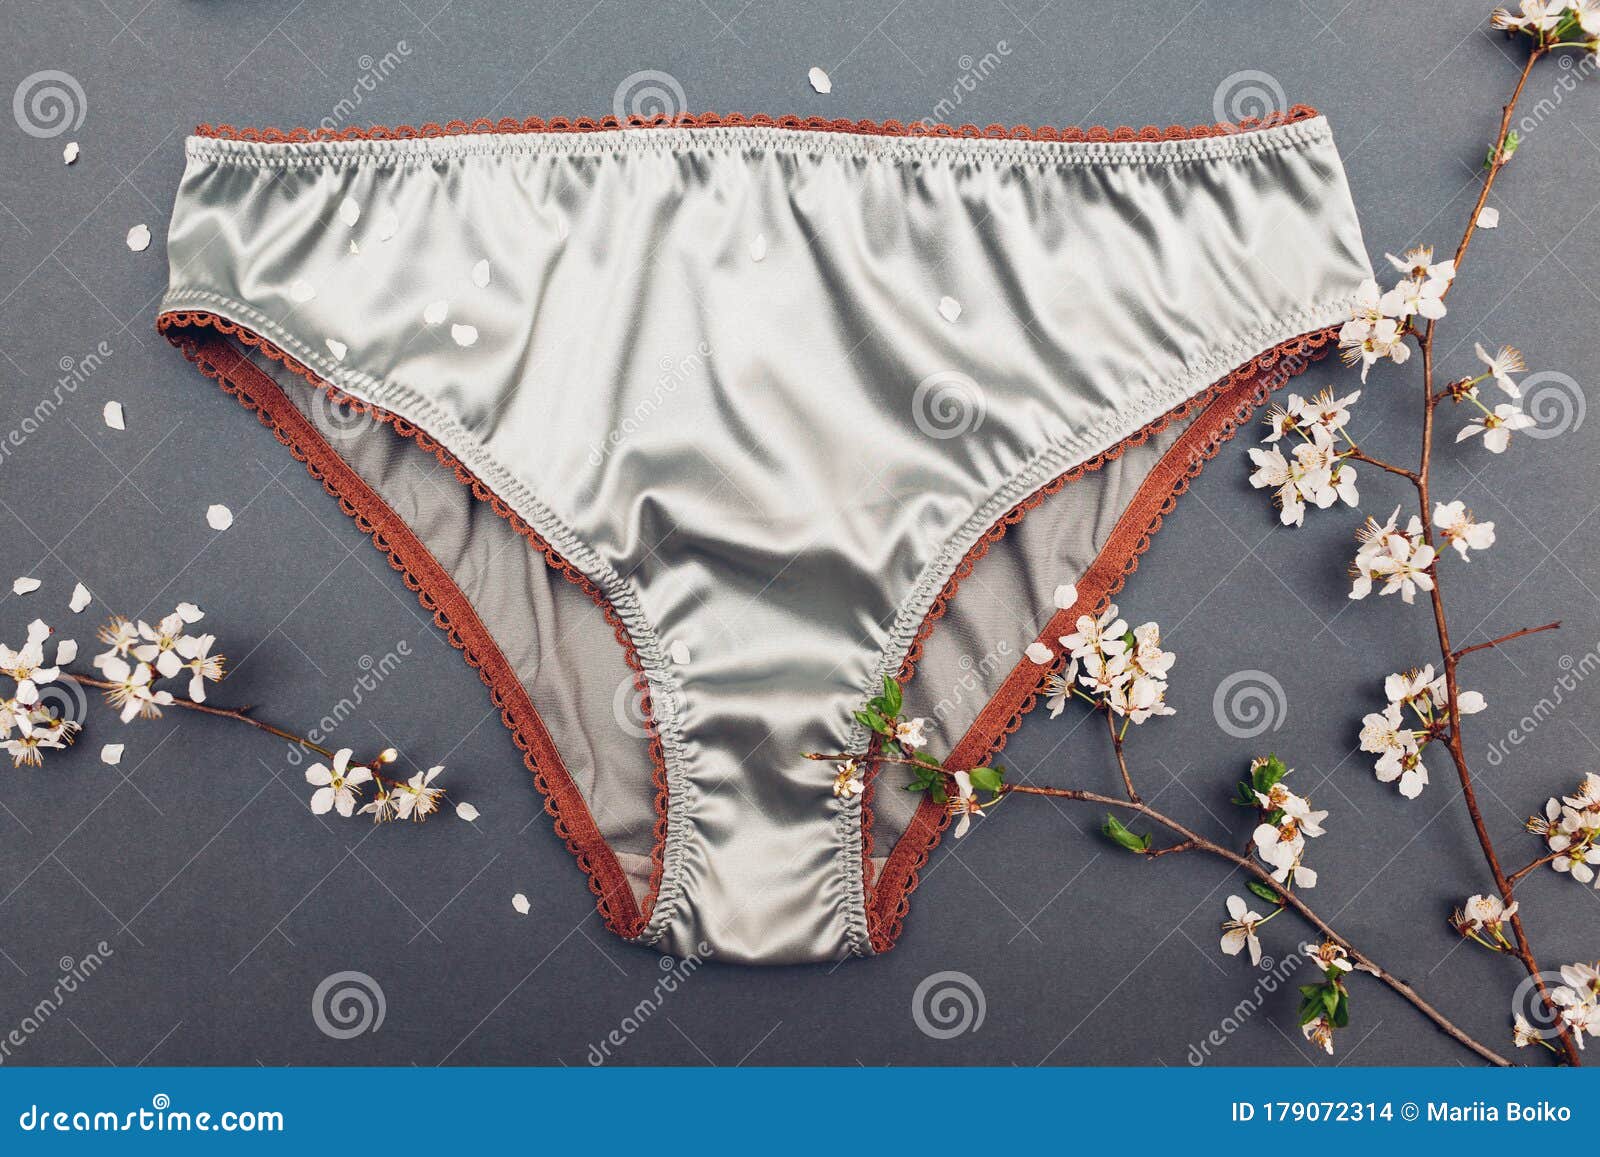 Satin Panty Panties Pics Images